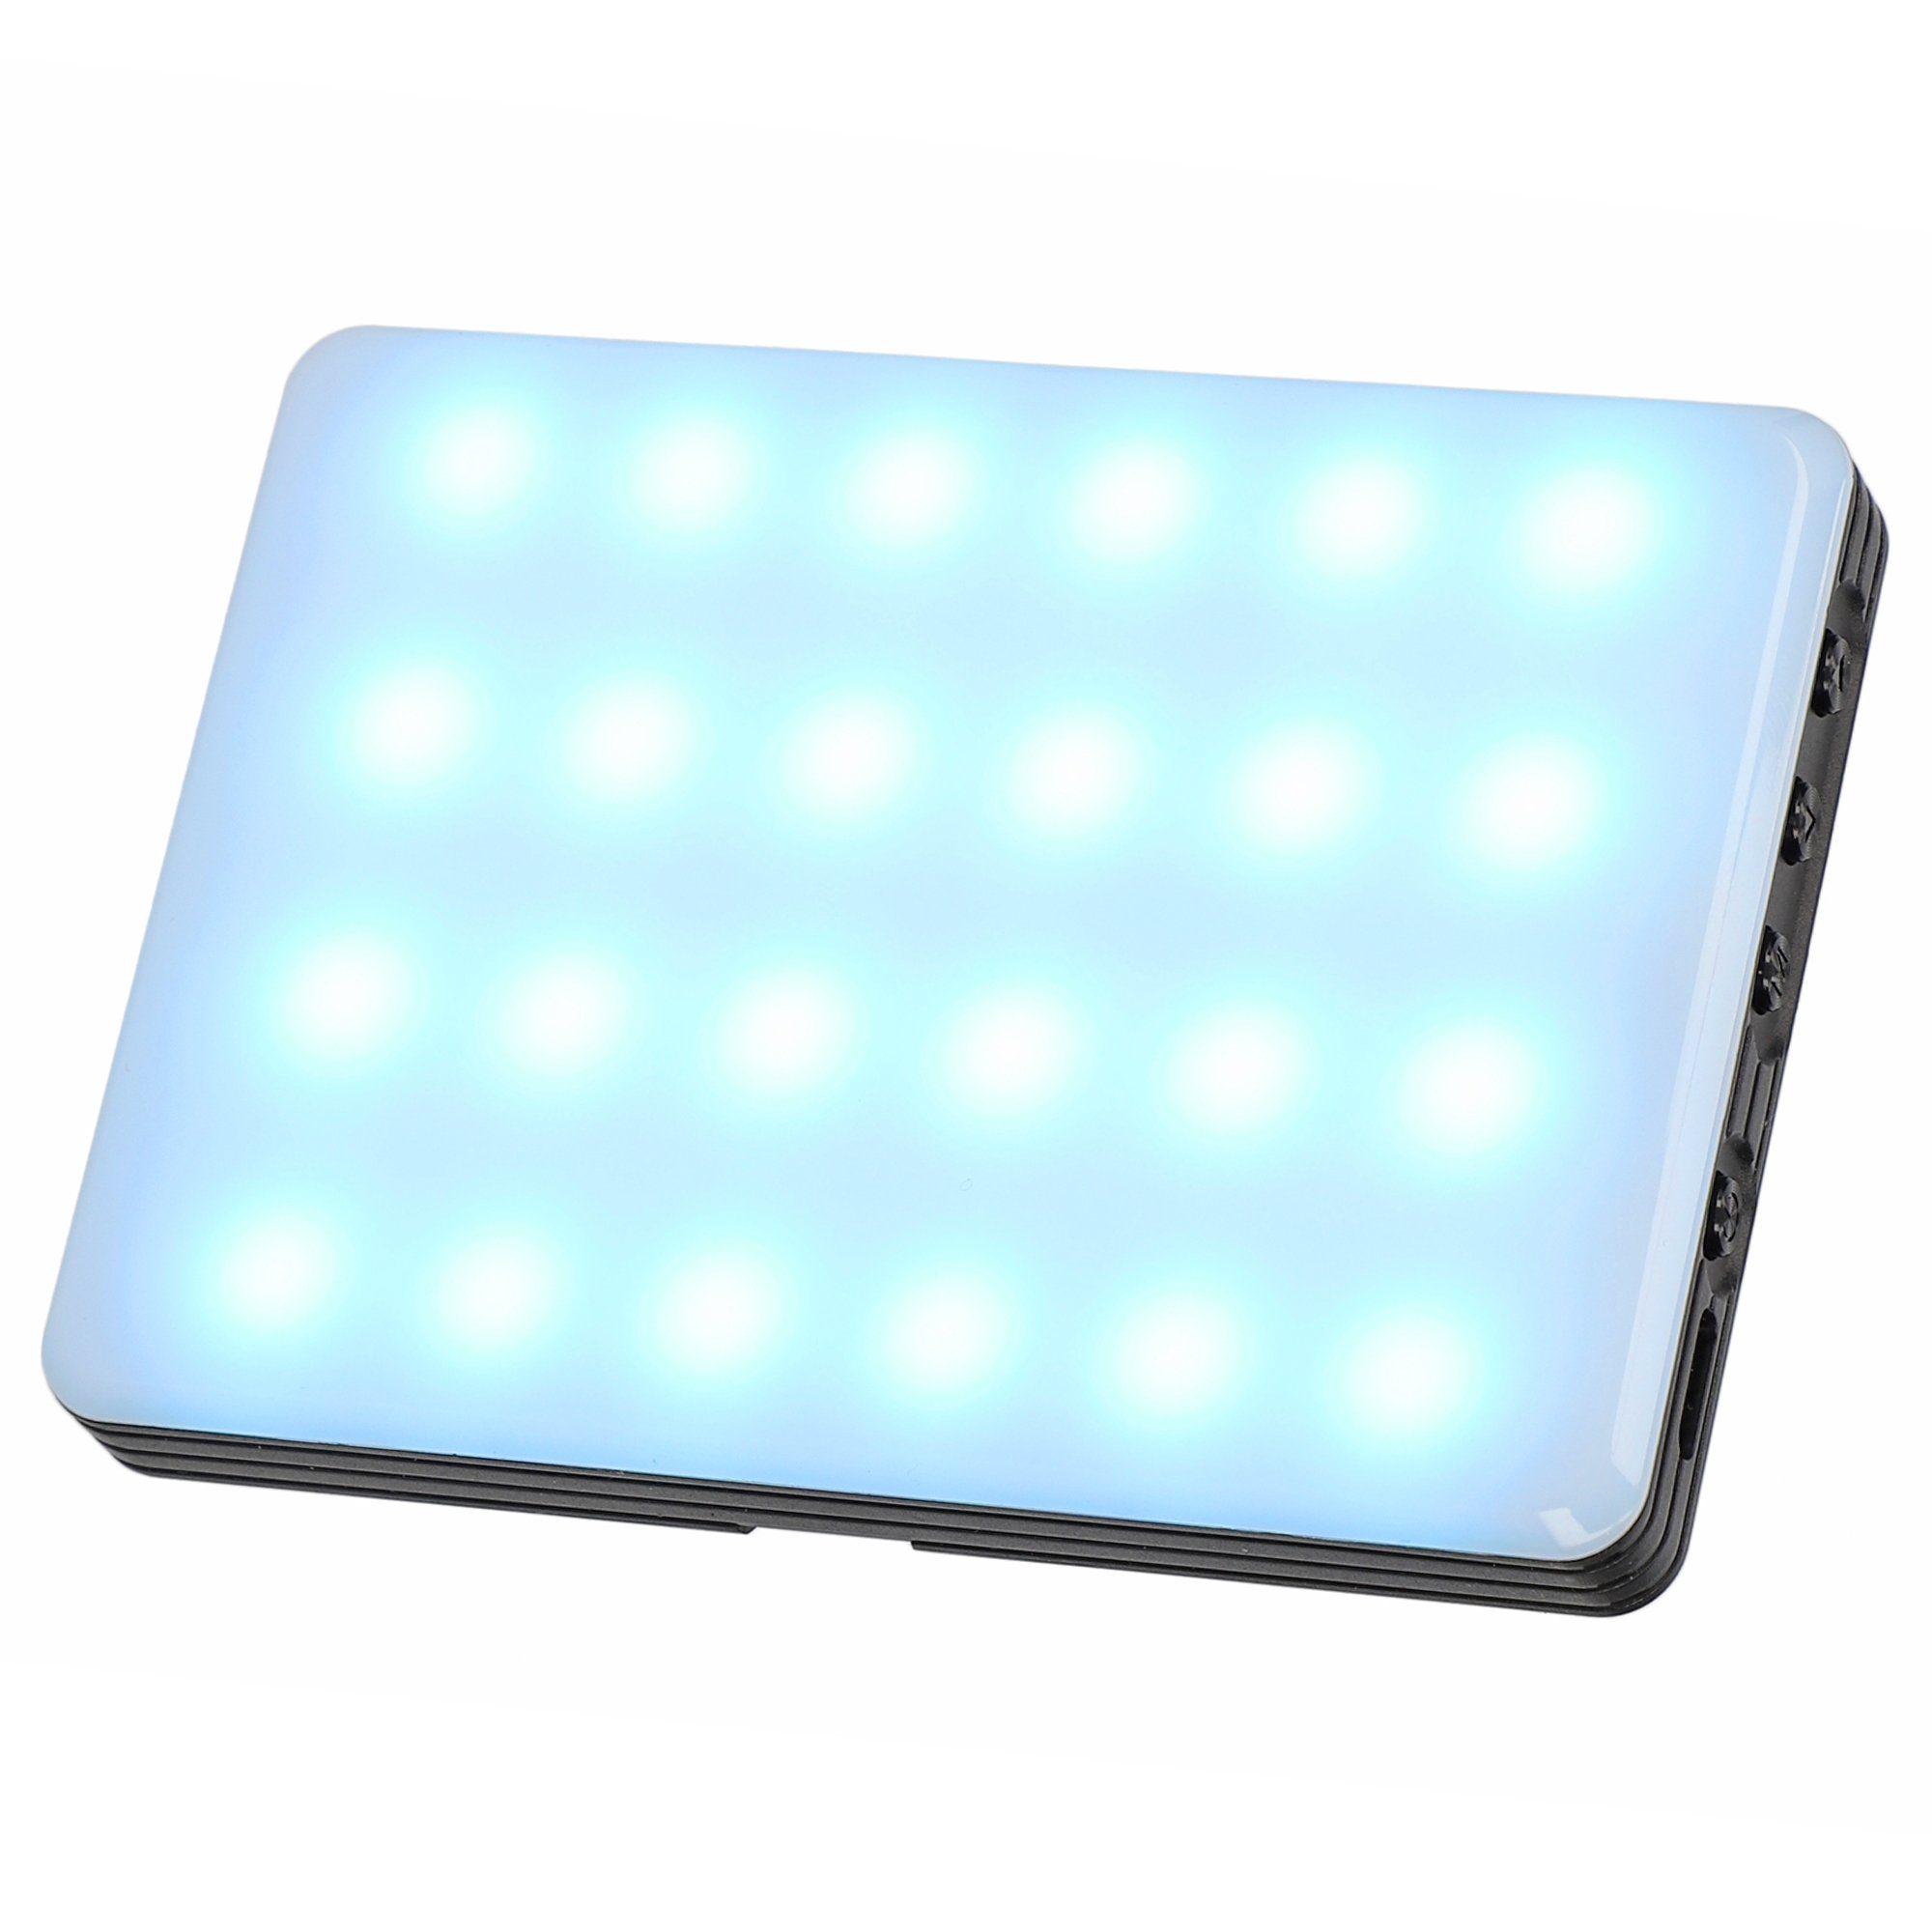 LED Ladbar durch Leuchte Ambiente ayex Bilderleuchte LED Perfekte Type-C RGB Ausleuchtung